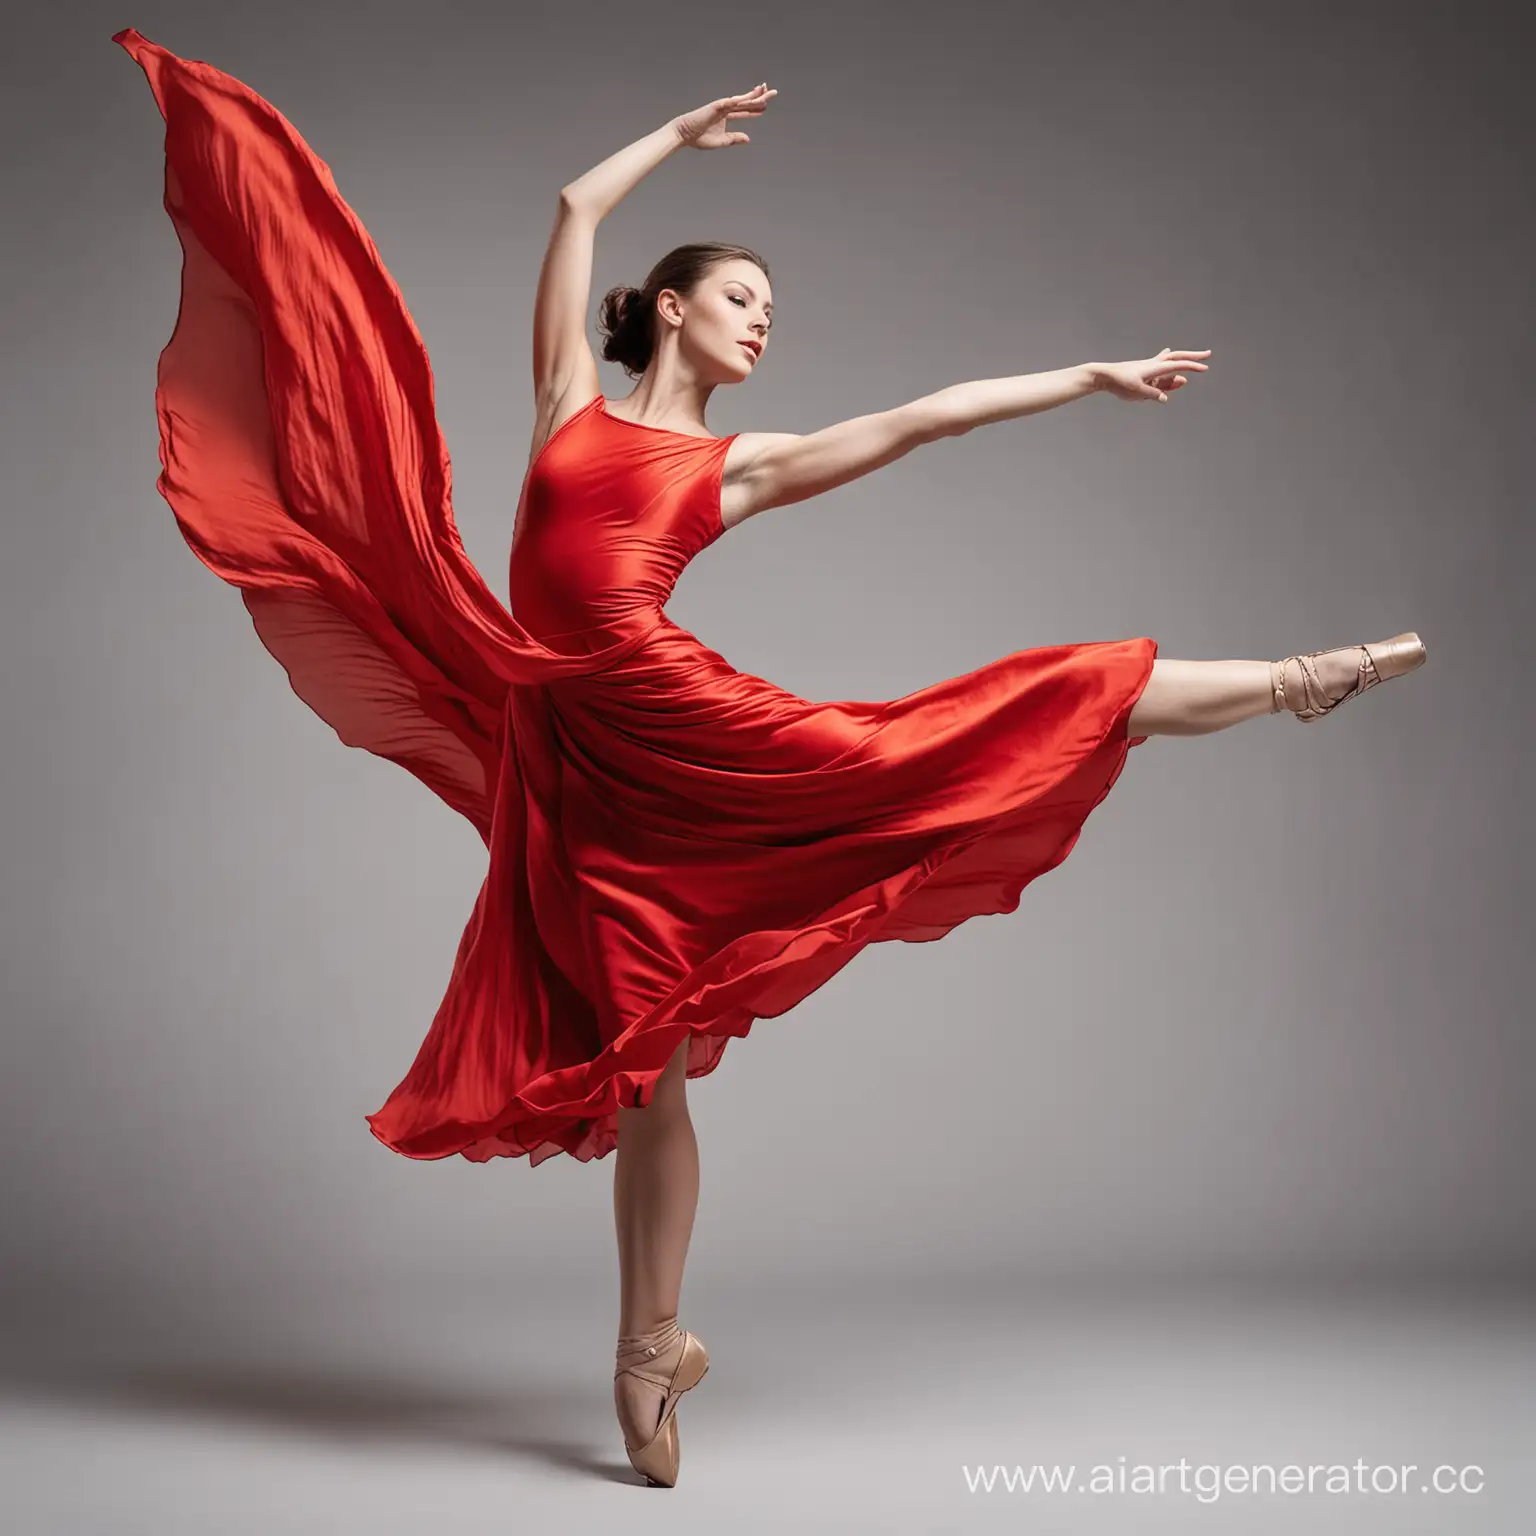 танцовщица в движении в красном платье во весь рост
